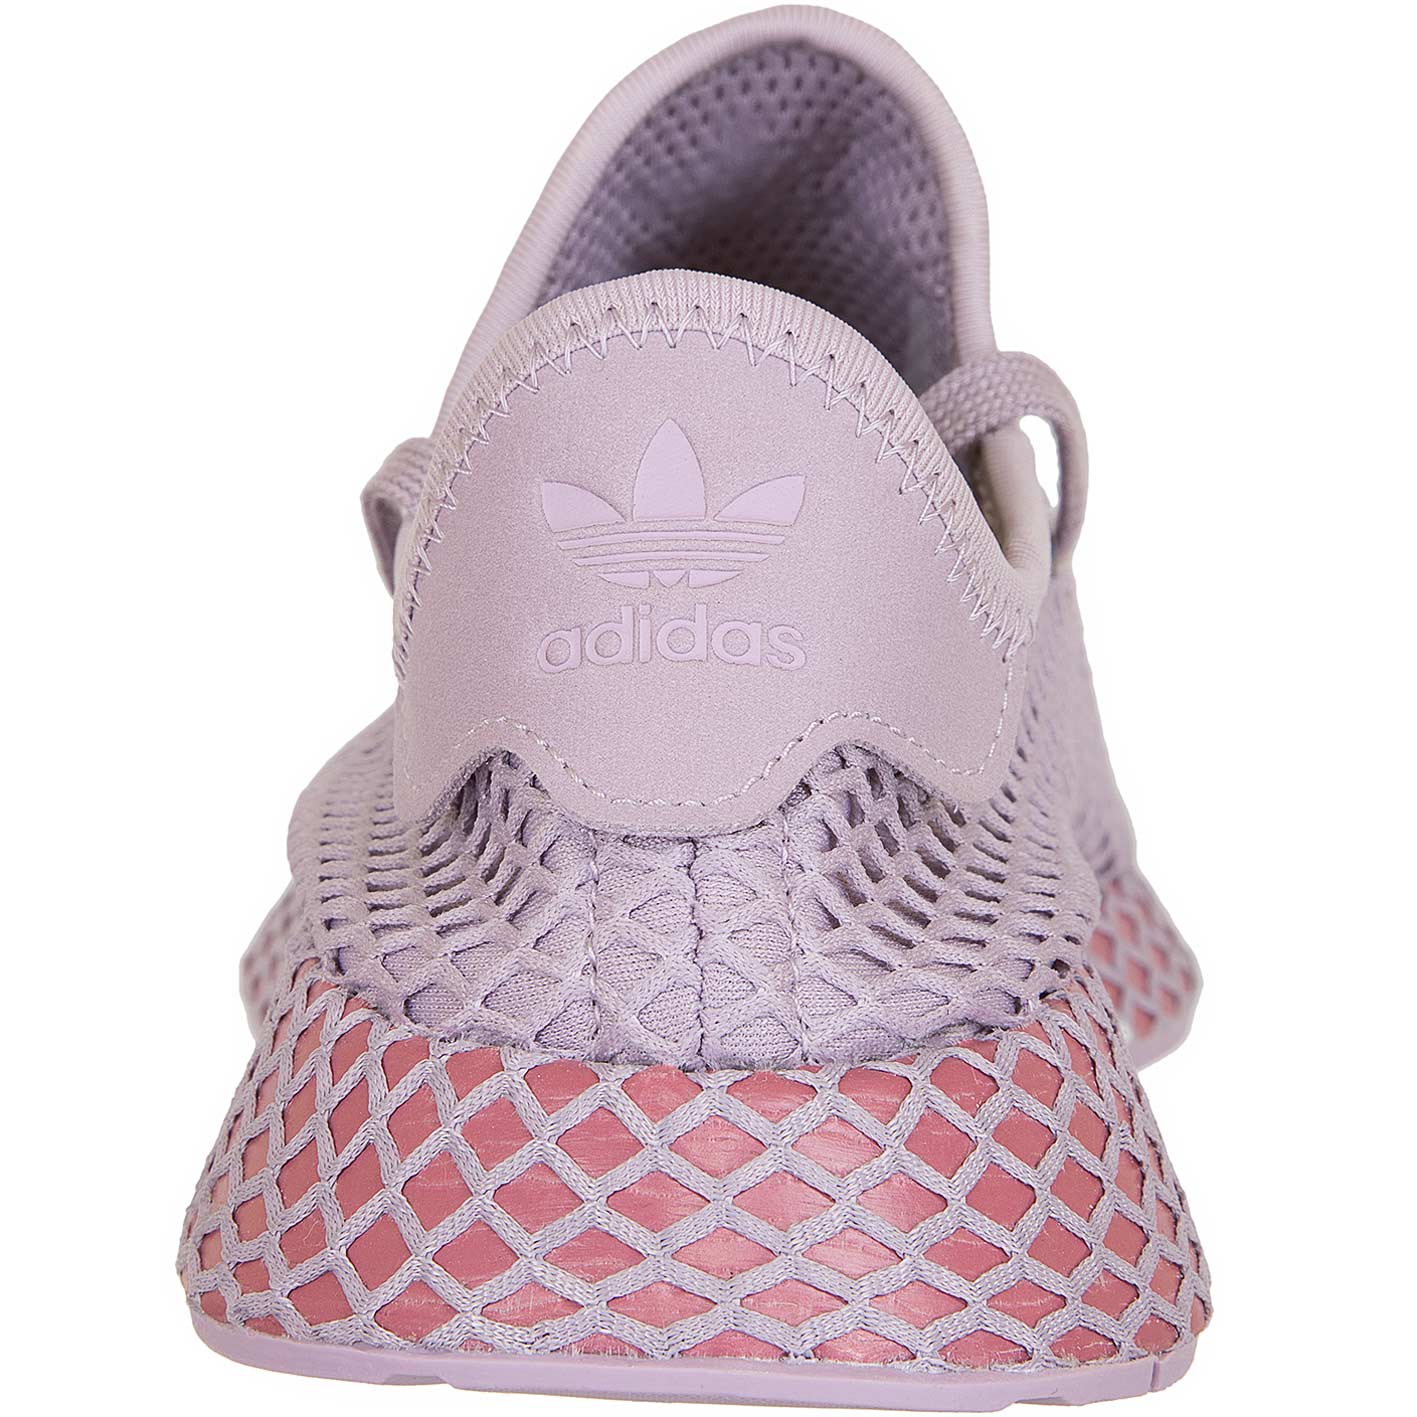 ☆ Adidas Originals Damen Sneaker Deerupt Runner lila - hier bestellen!